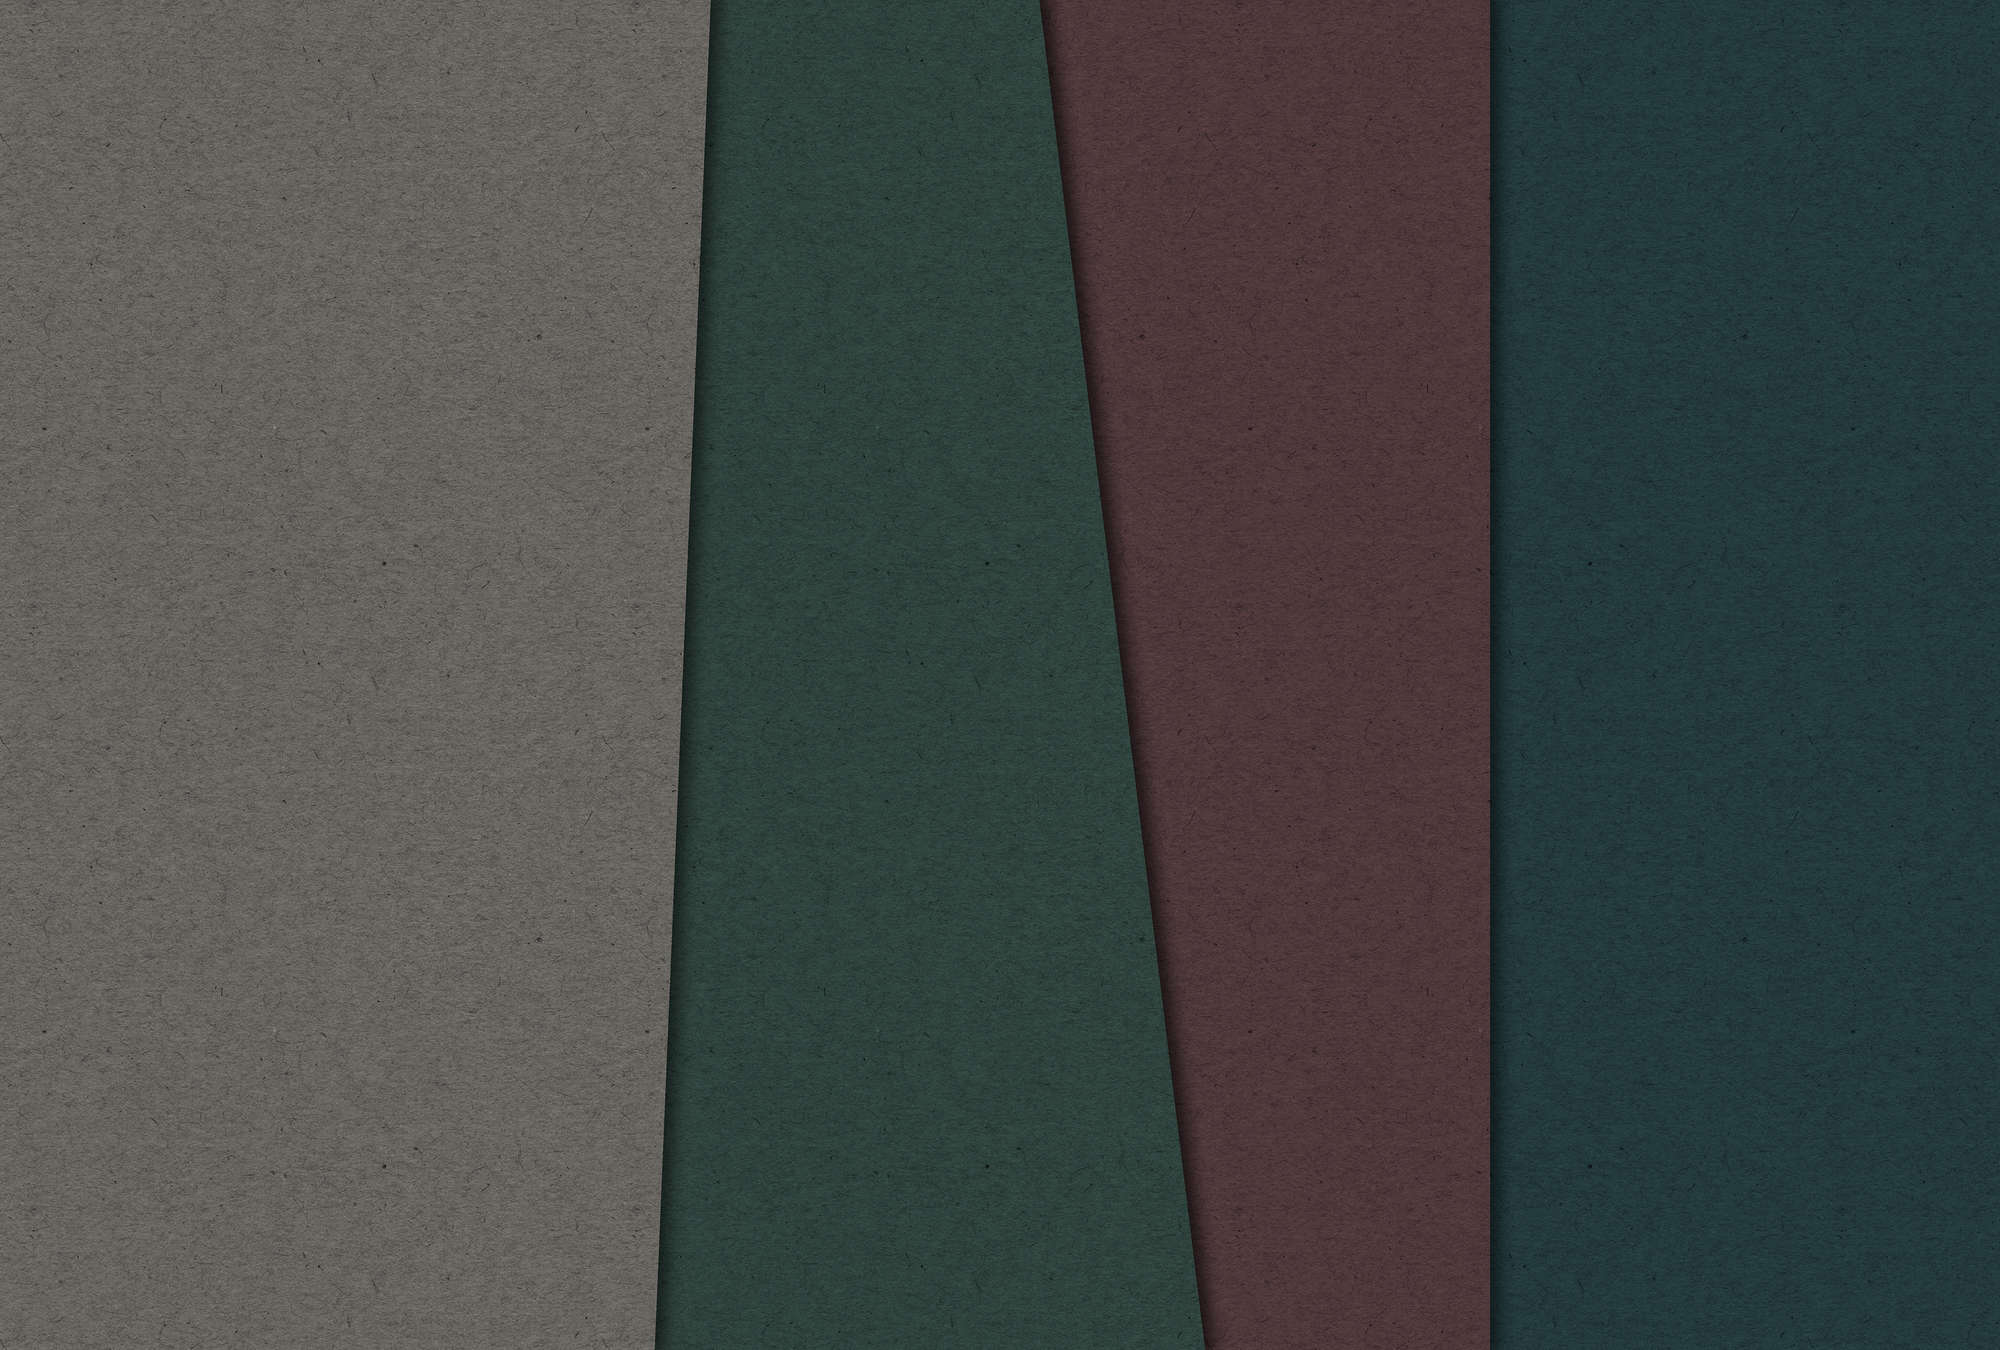             Gelaagd karton 1 - Digital behang met donker gekleurde vlakken in kartonstructuur - Bruin, Groen | Premium glad vlies
        